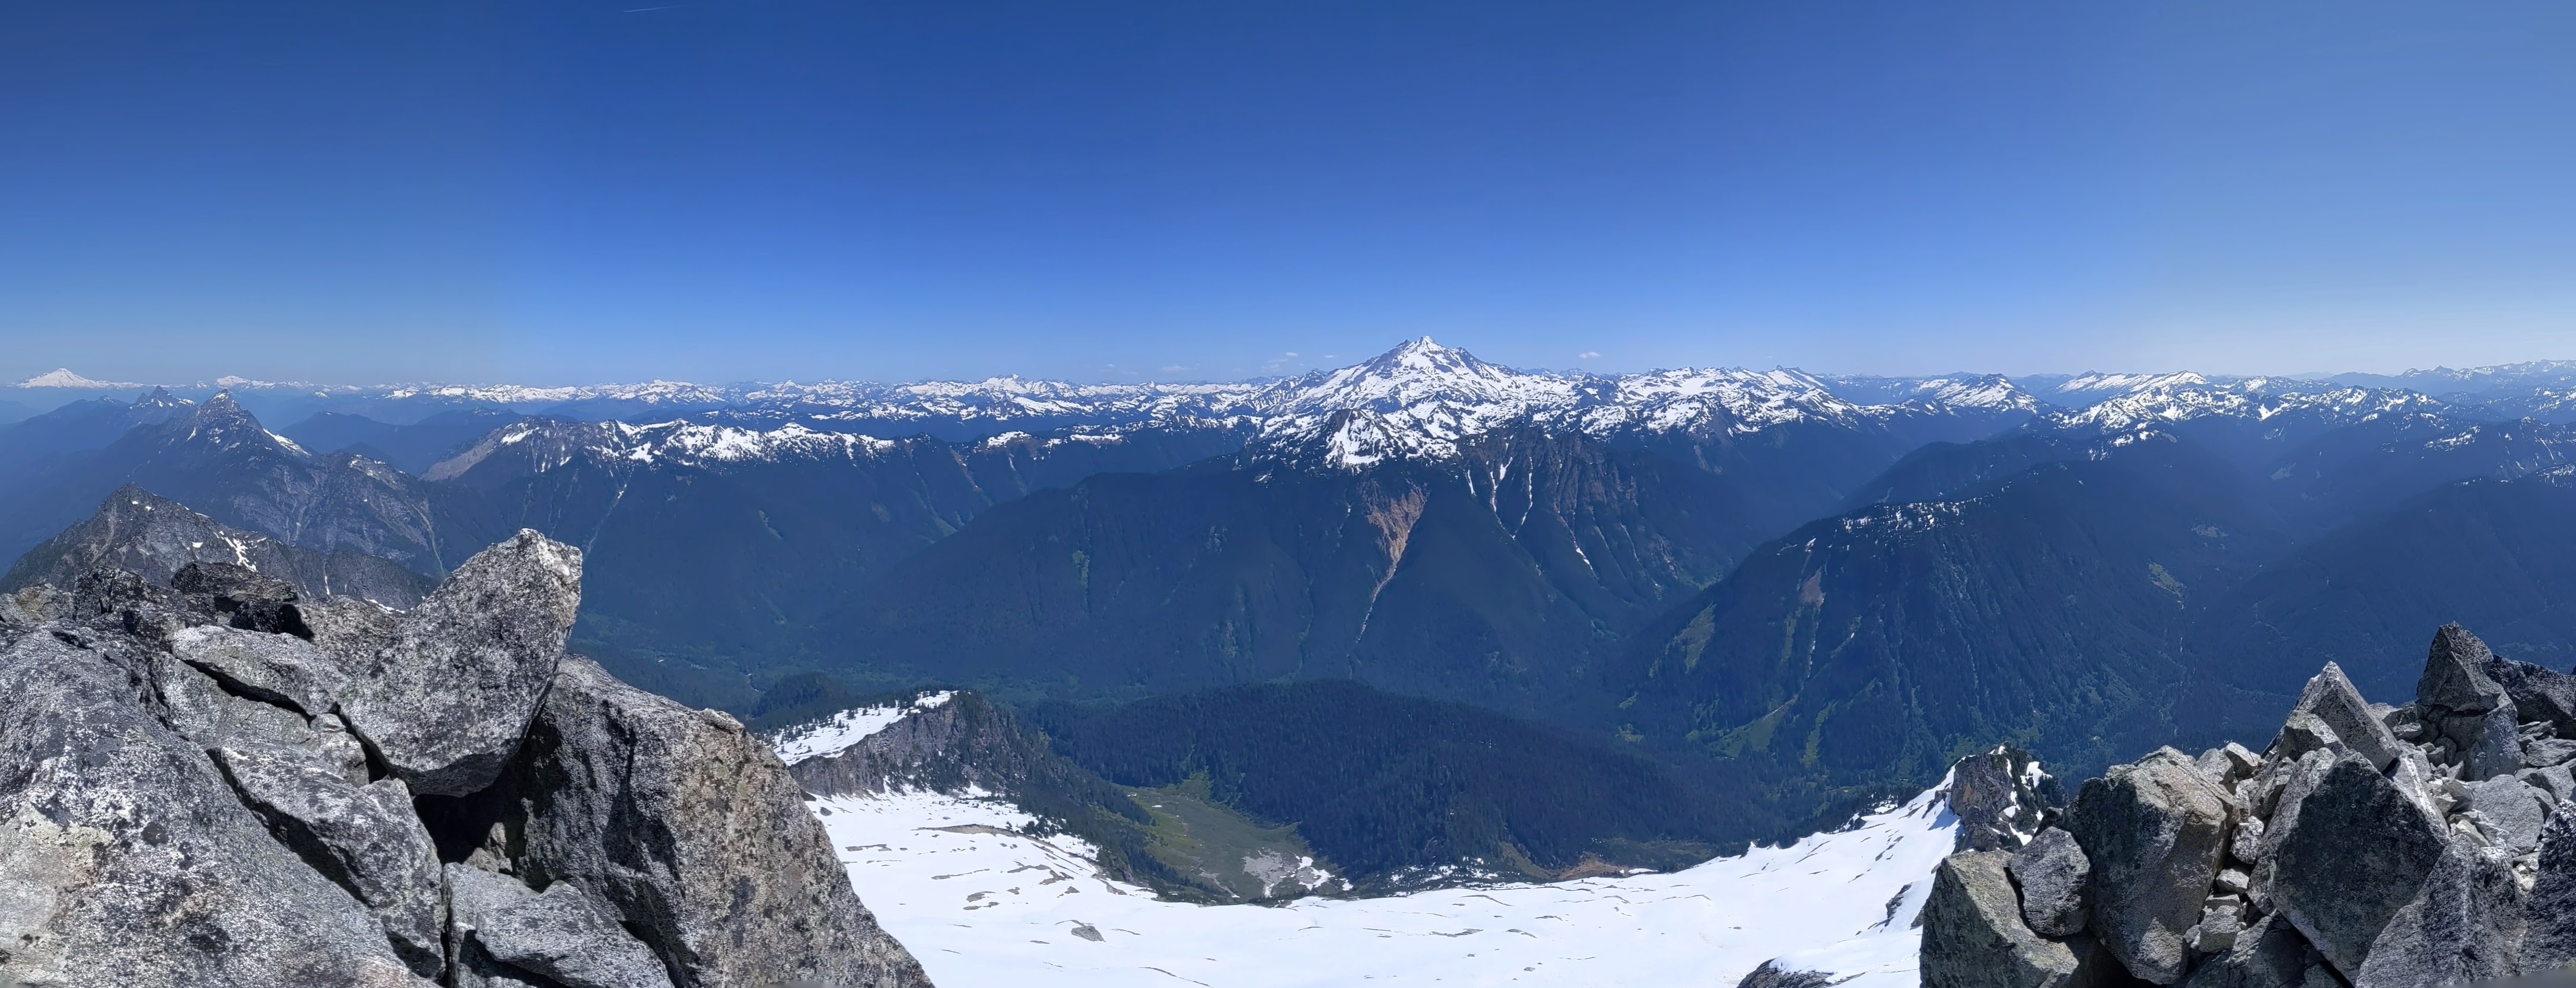 summit glacier peak.jpg